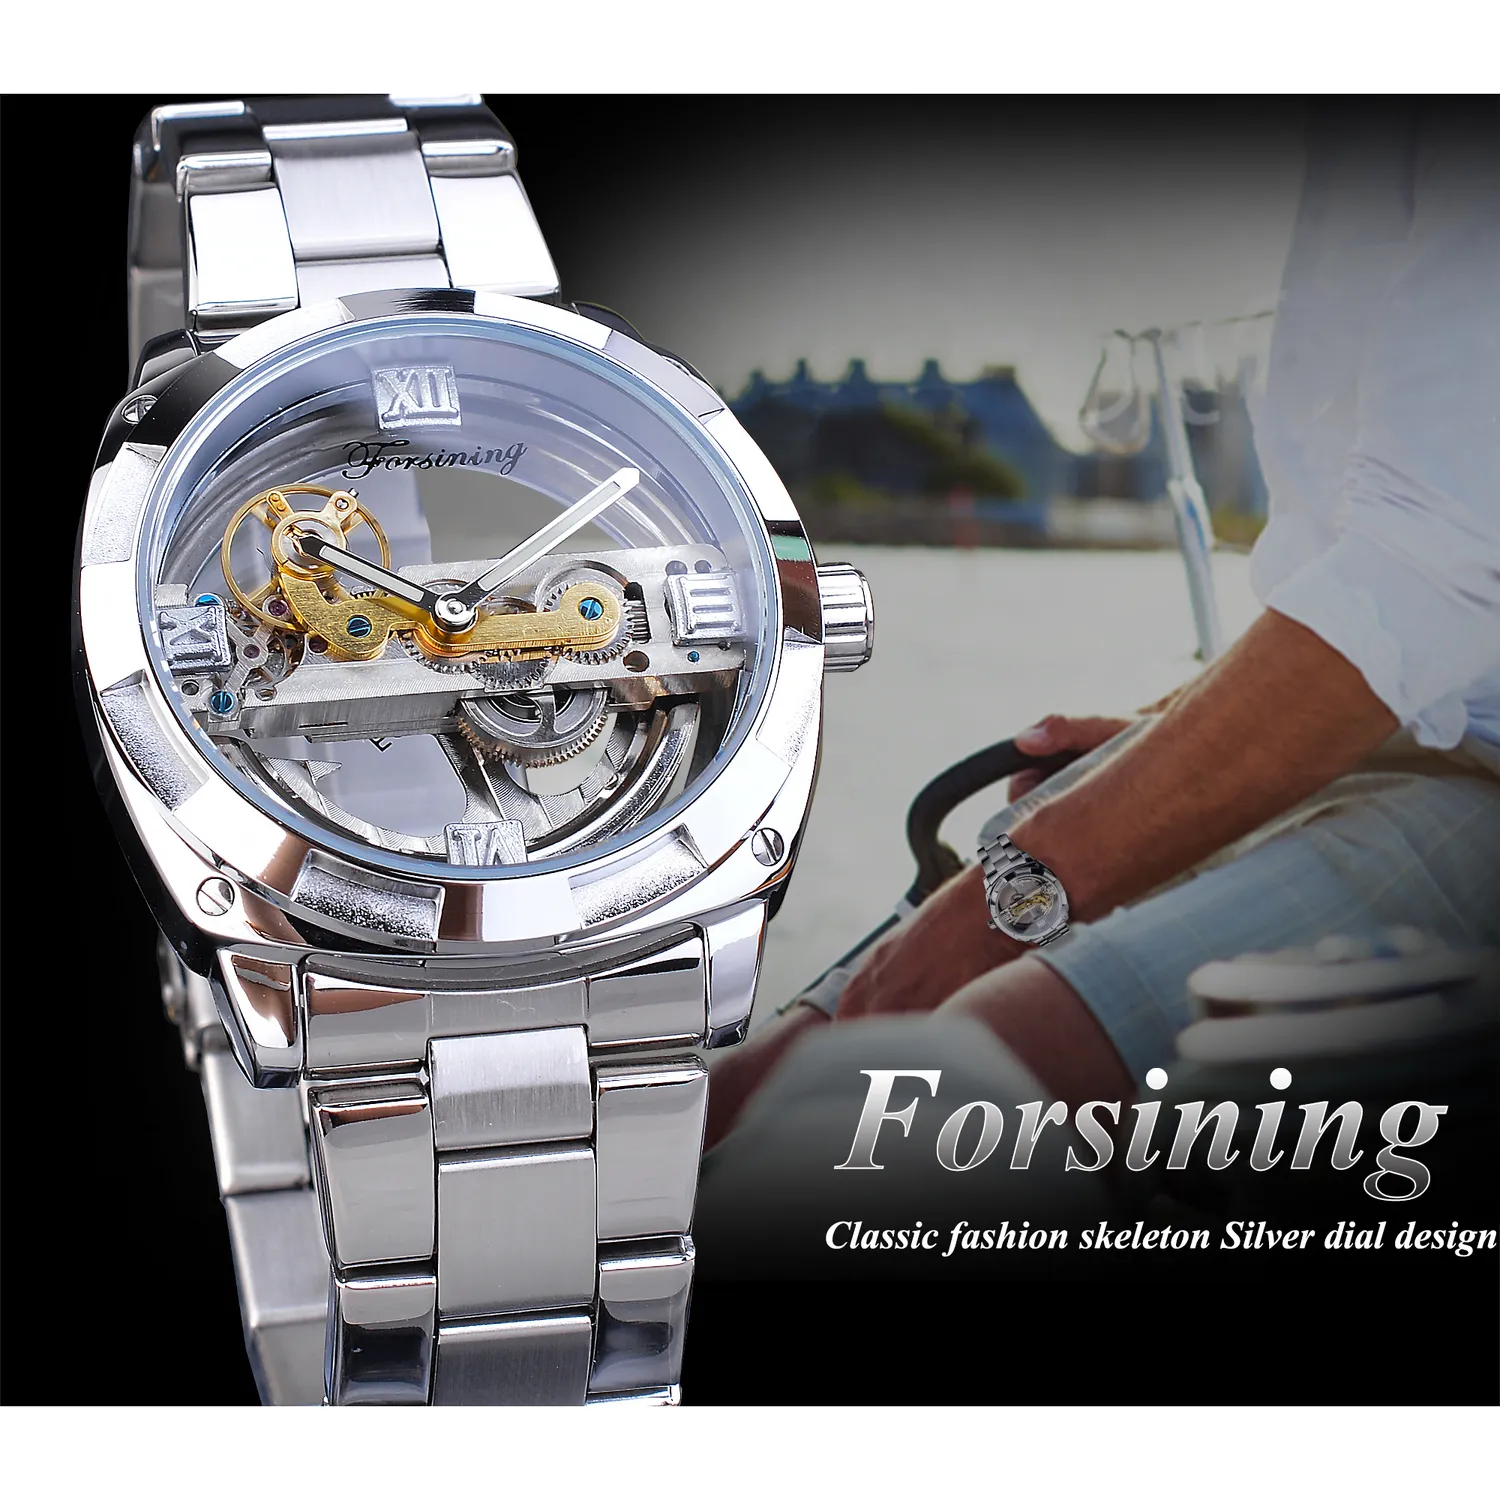 Forsining Männer Transparent Design Mechanische Uhr Automatische Silber Quadrat Goldene Getriebe Skeleton Edelstahl Gürtel Uhr Saati Y221q